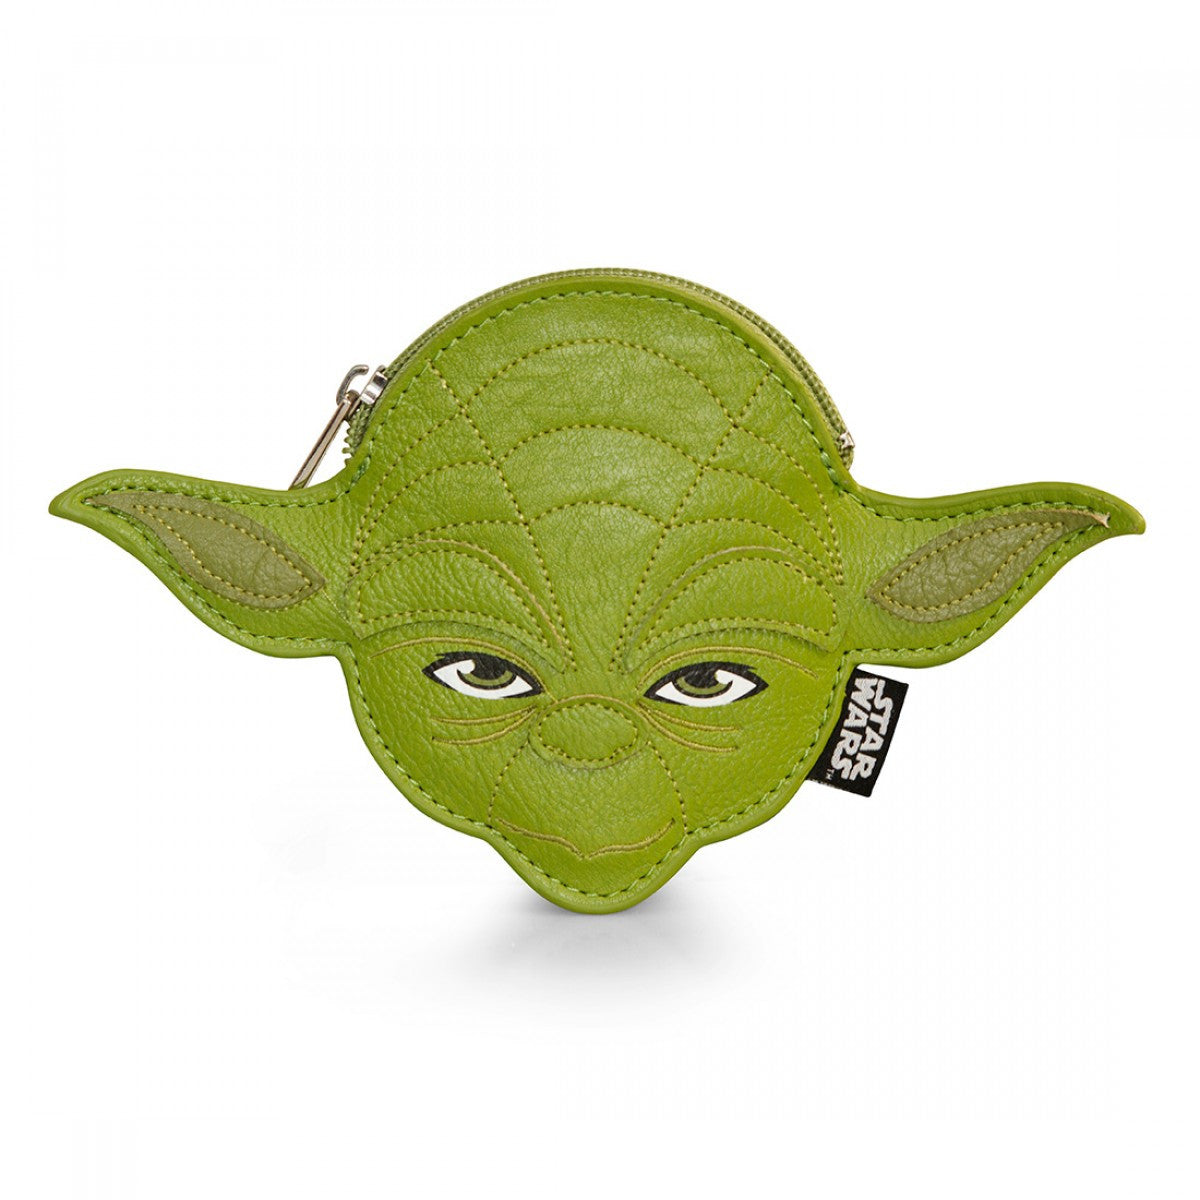 Star Wars Yoda Coin Bag Loungefly